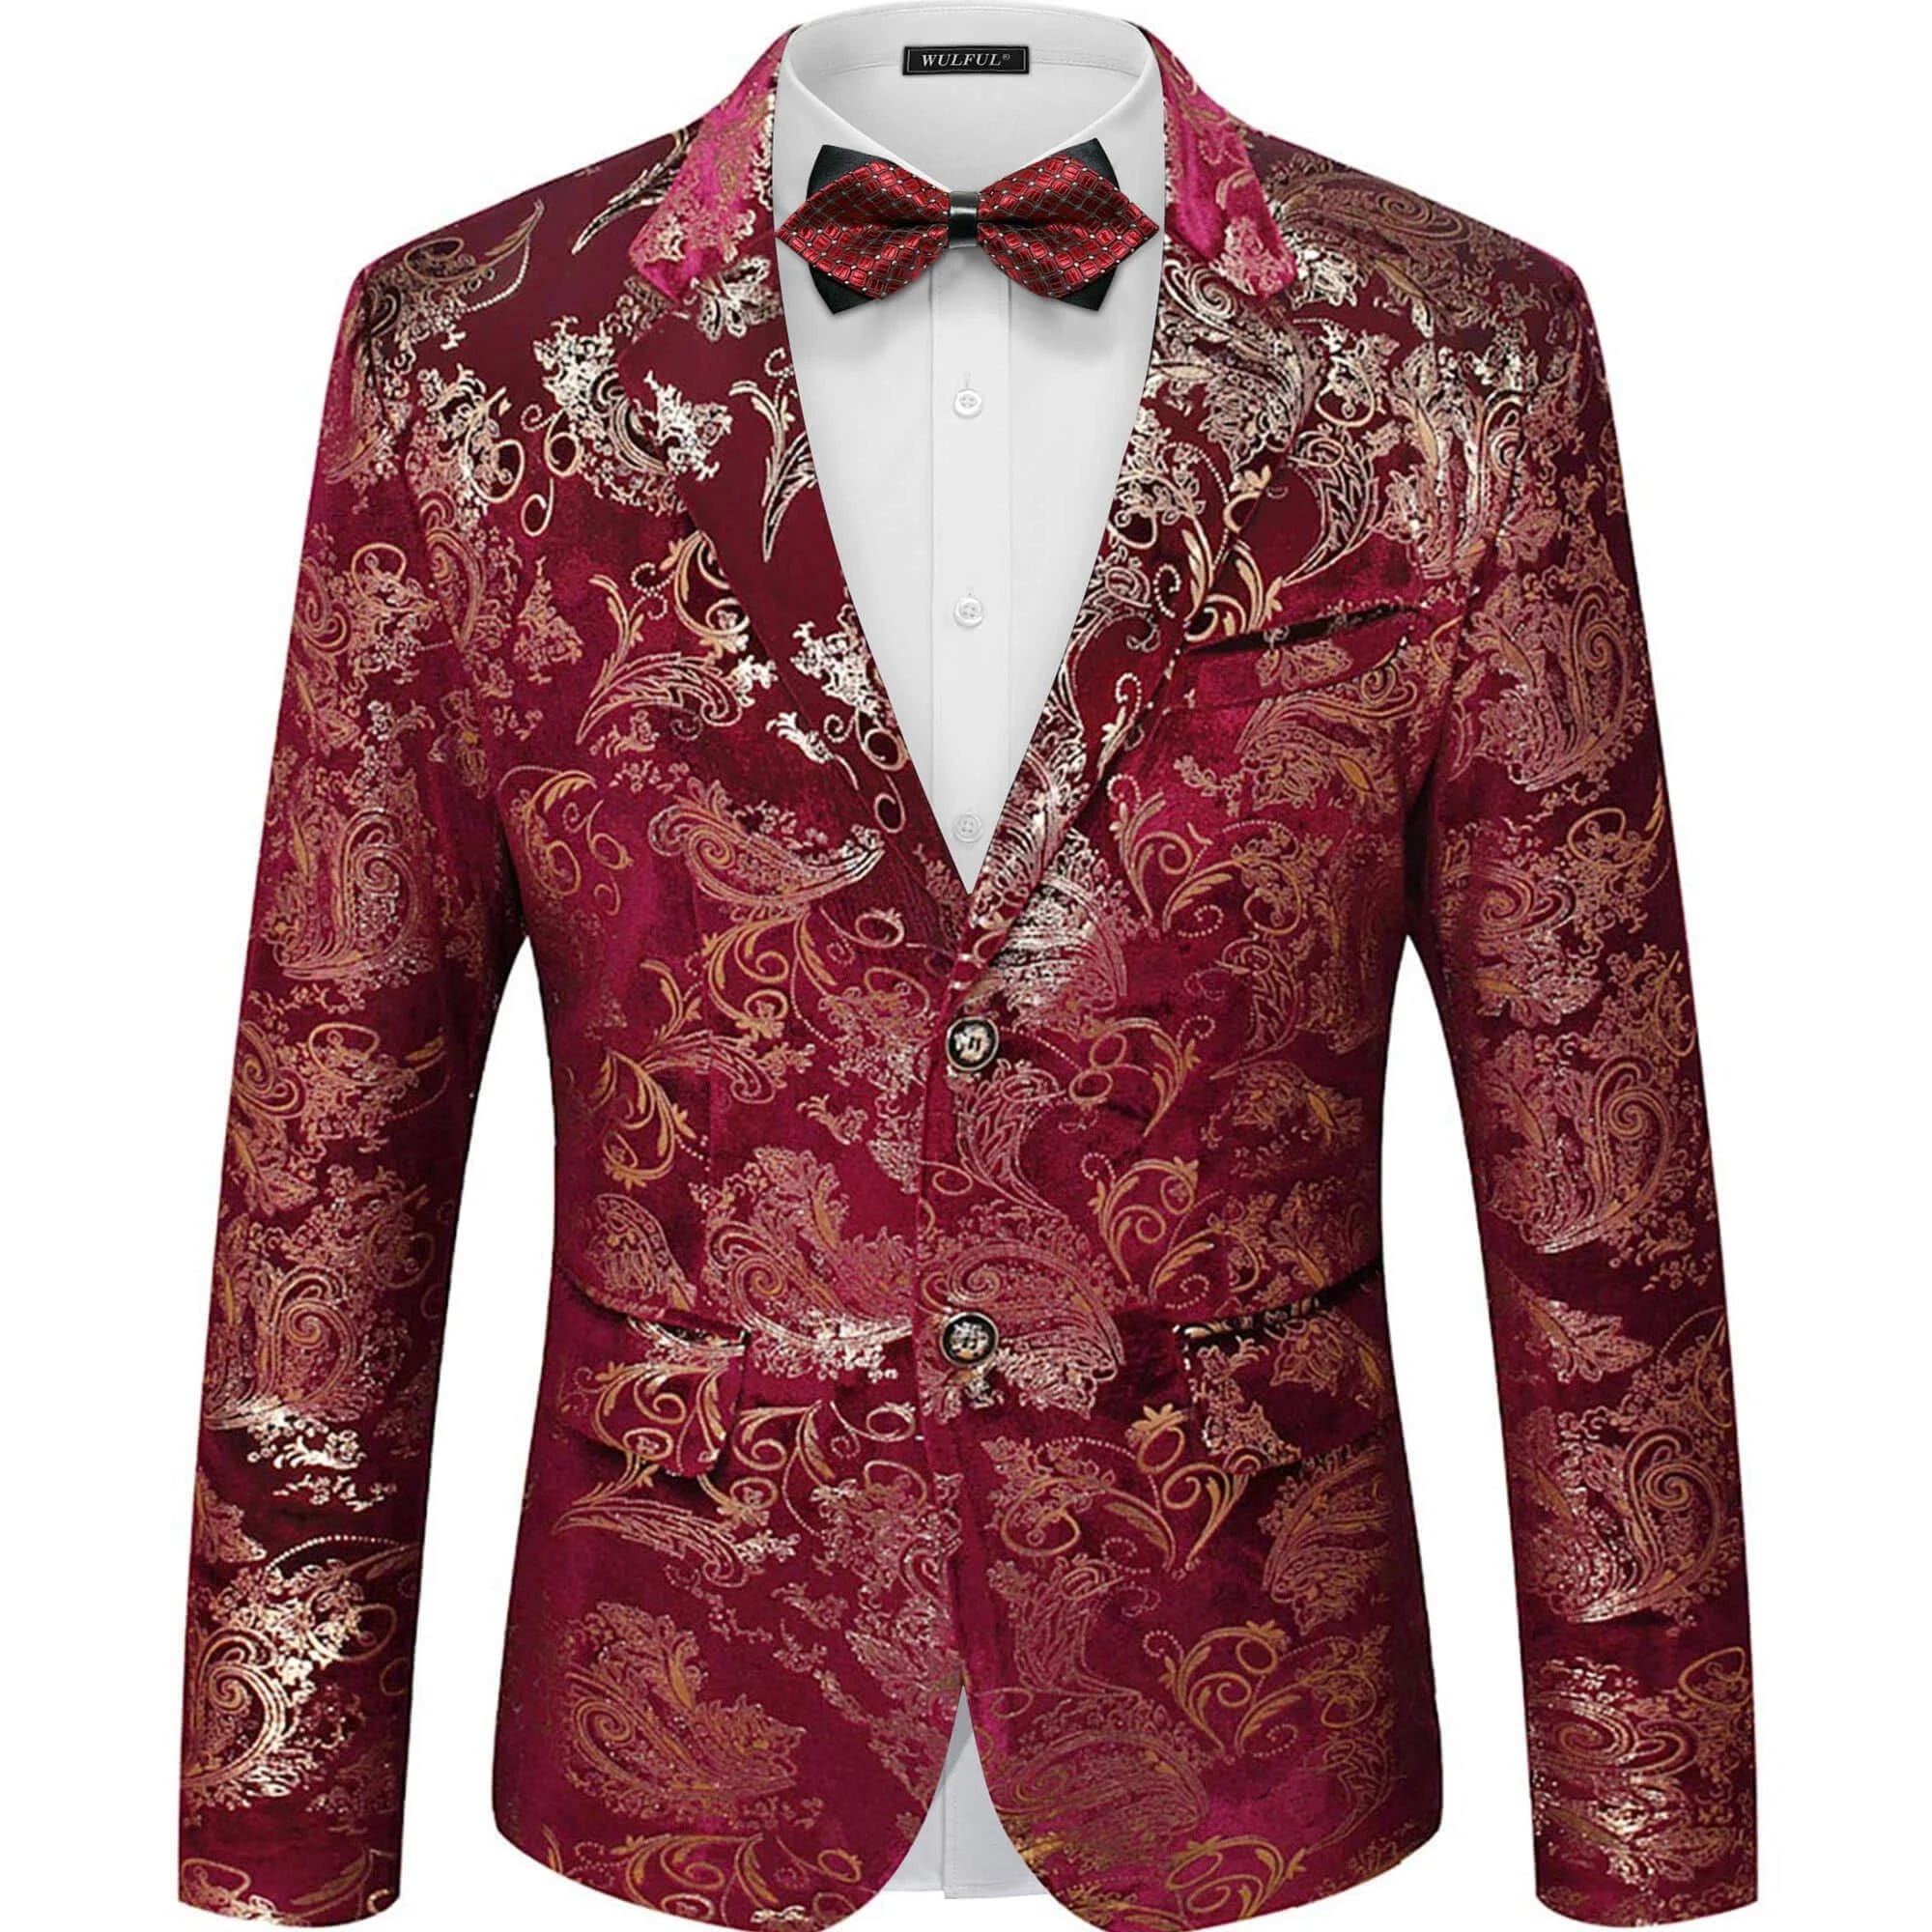 Elegant Floral Suit Jacket for Dressy Occasions | Image